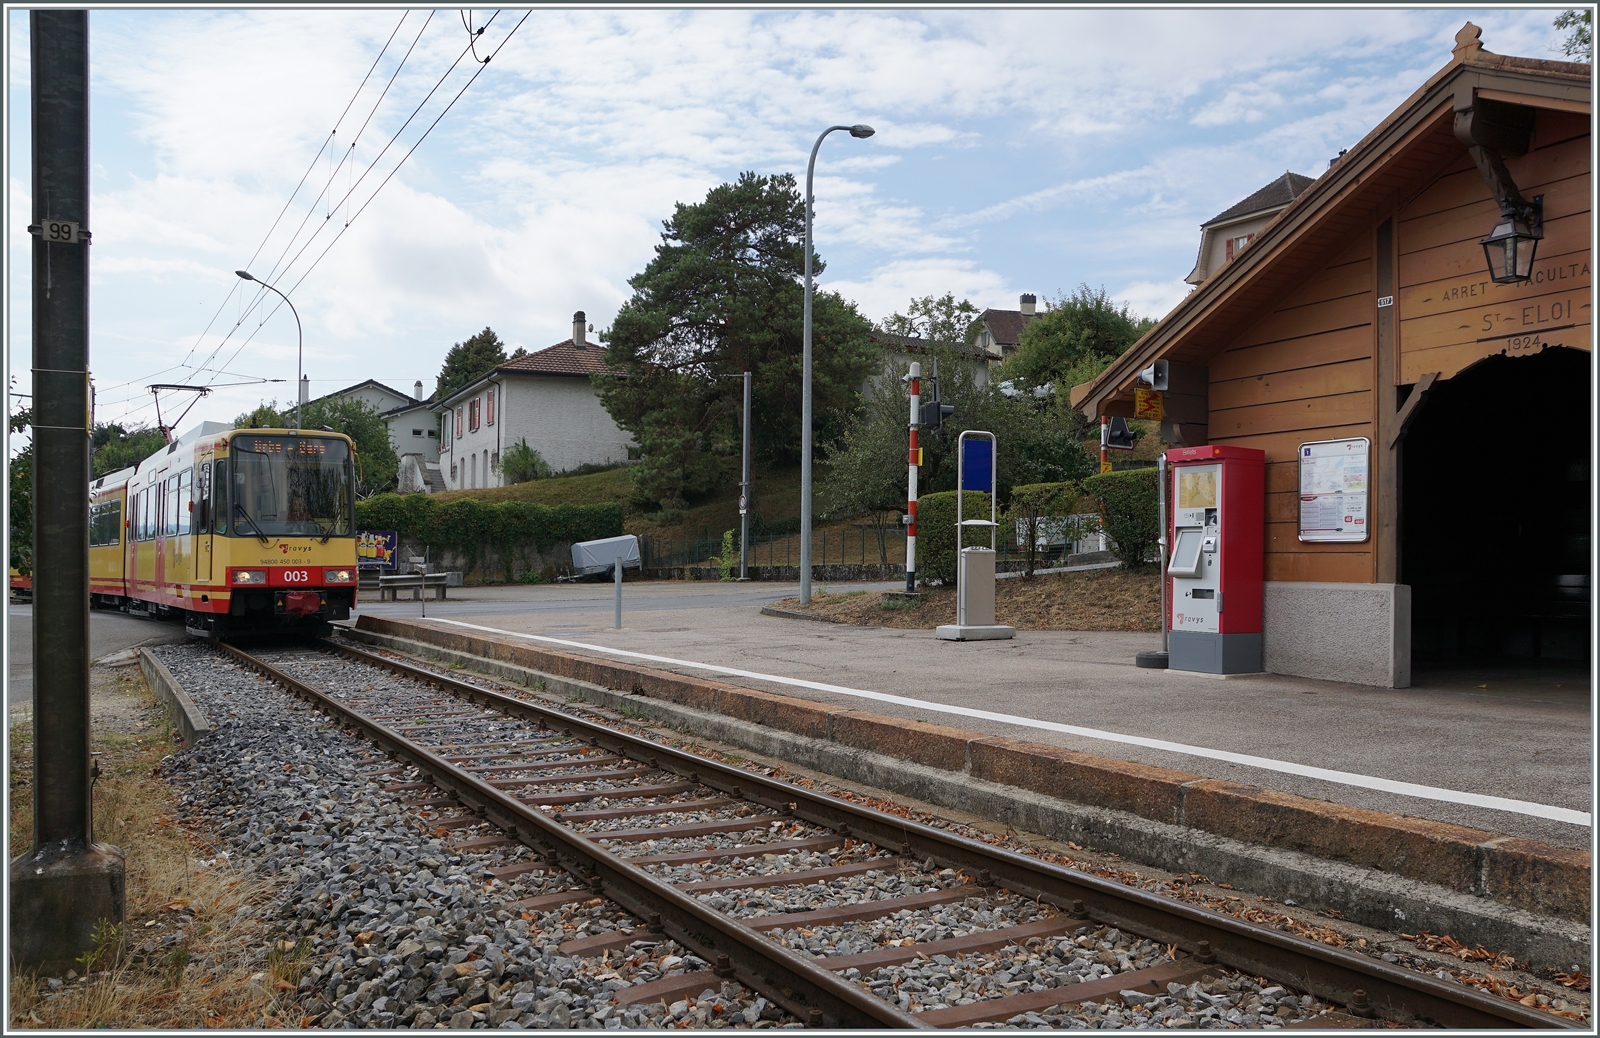 Der TRAVYS/OC Be 4/8 003 erreicht auf der Fahrt von Chavornay nach Orbe den kleinen Halt St-Eloi. 

15. Aug. 2022